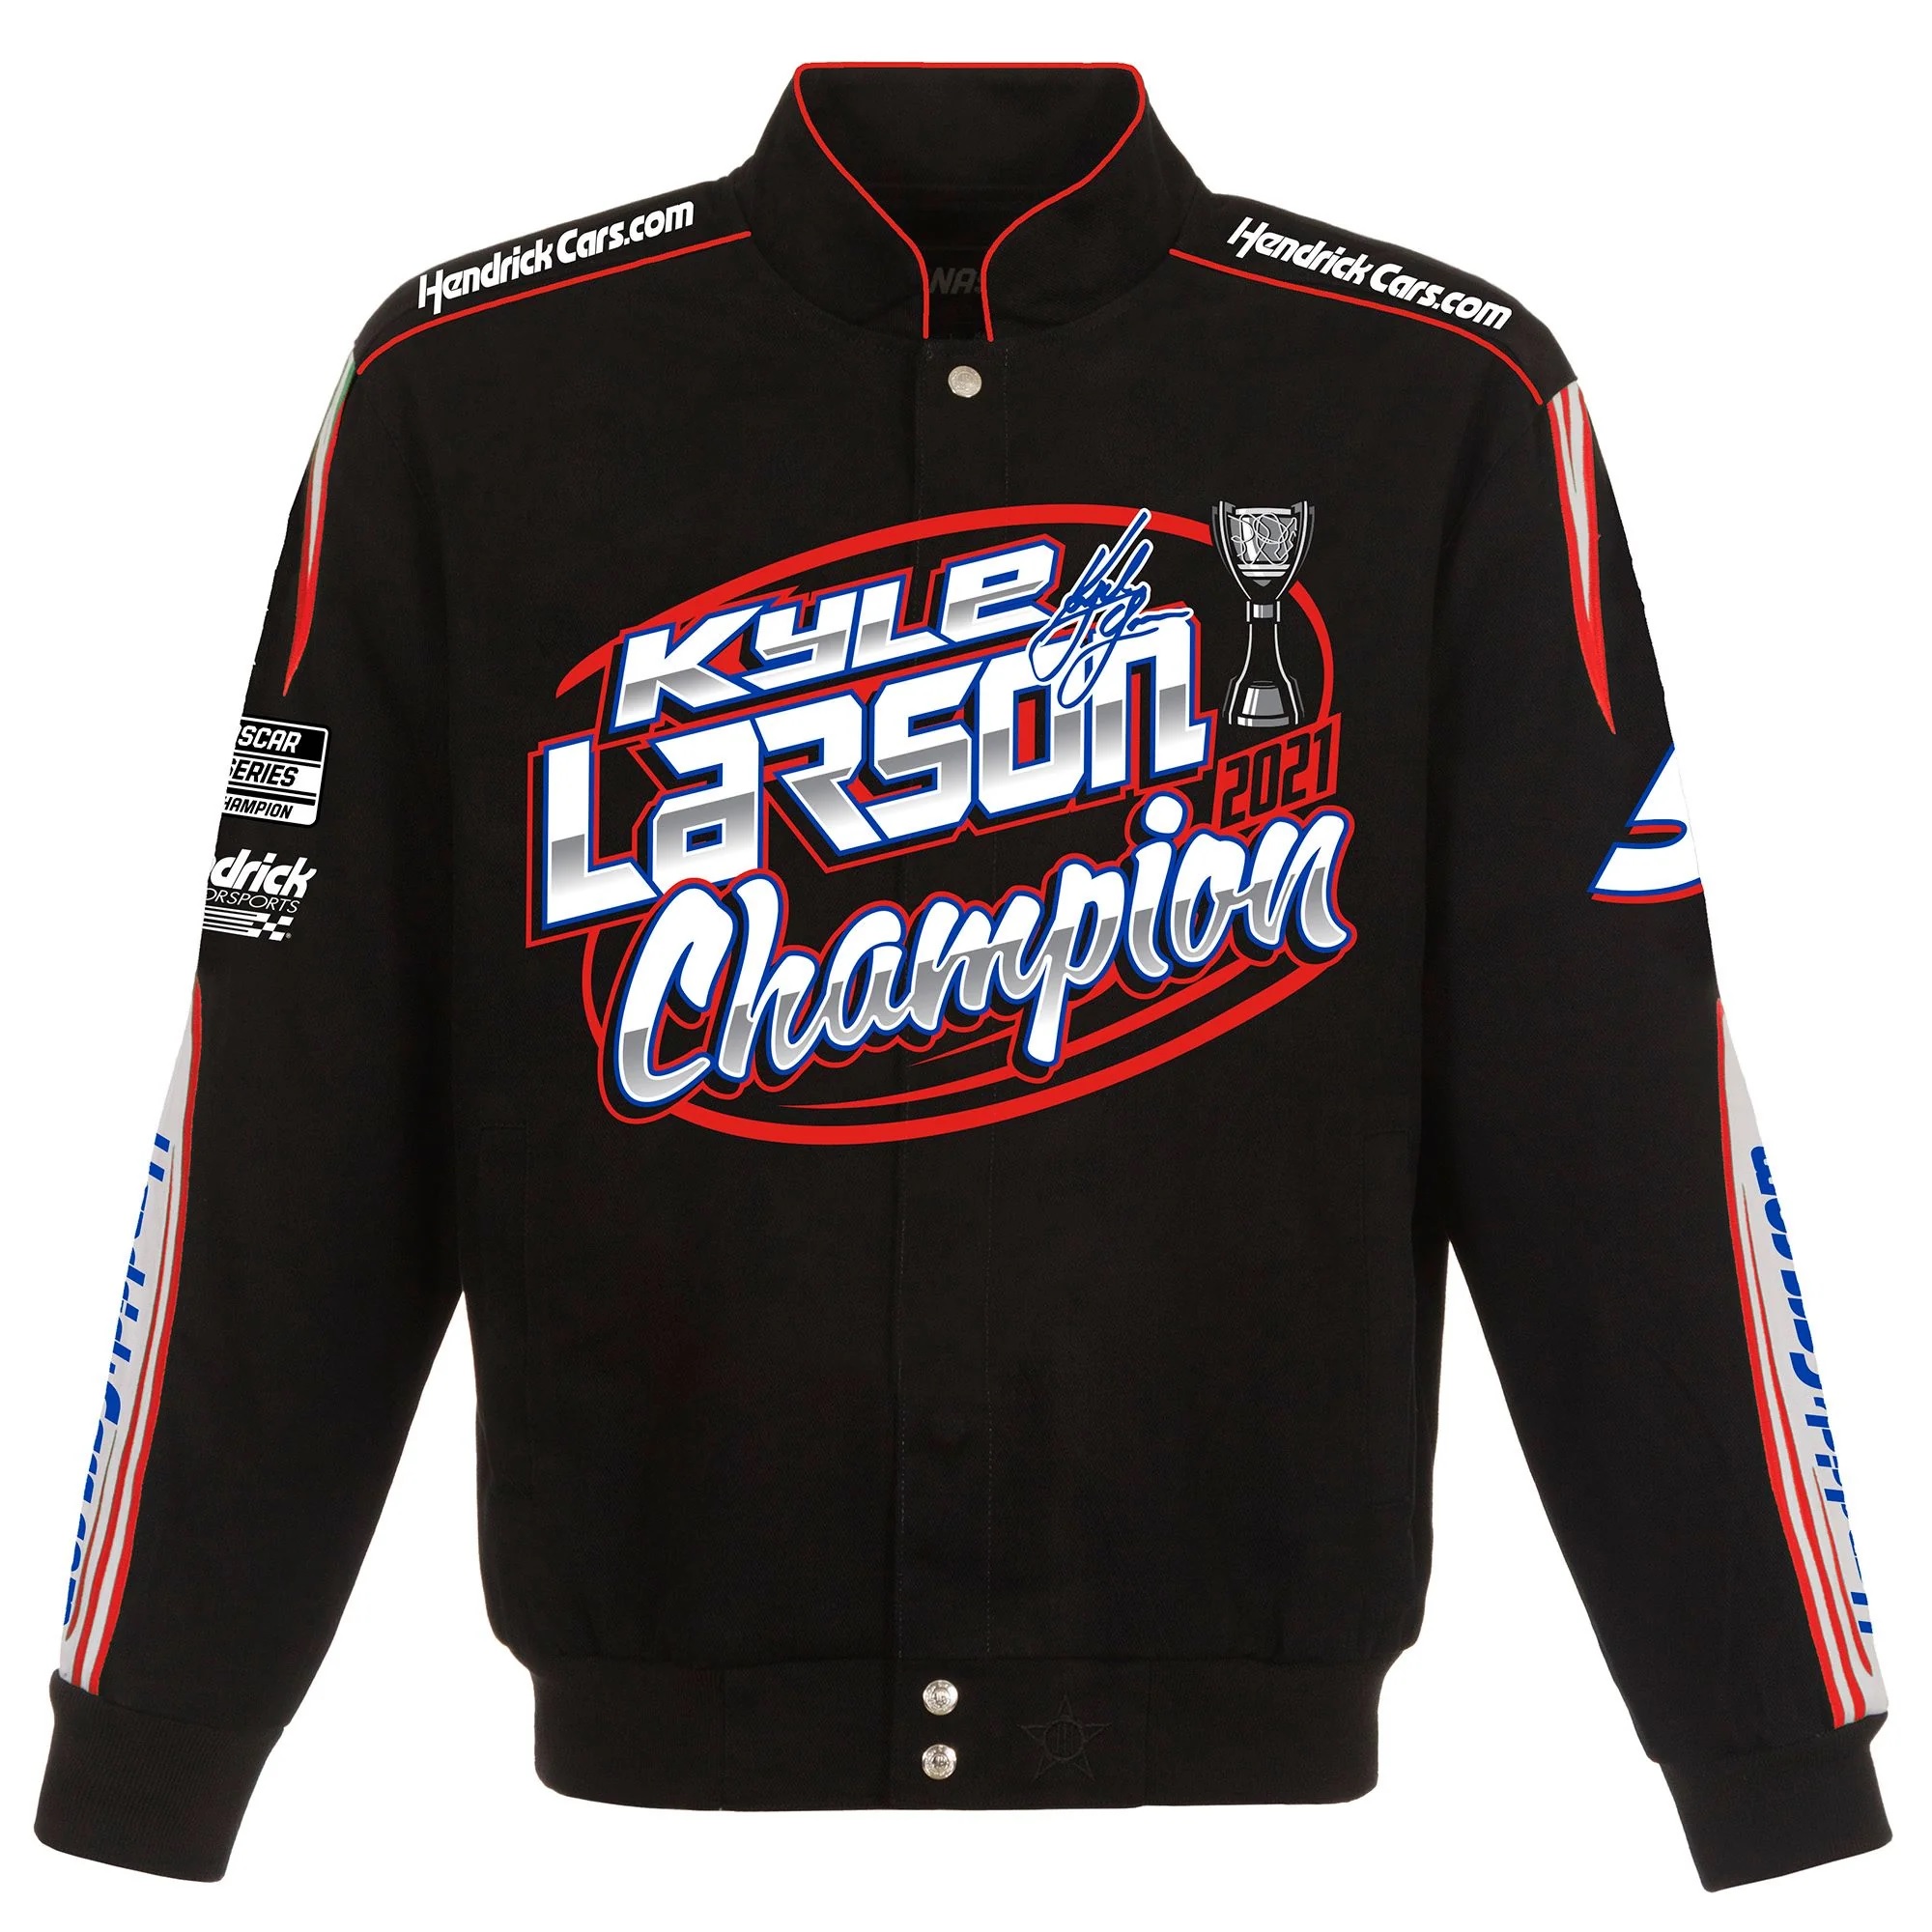 Kyle Larson Champion Full-Snap Twill Cotton Jacket